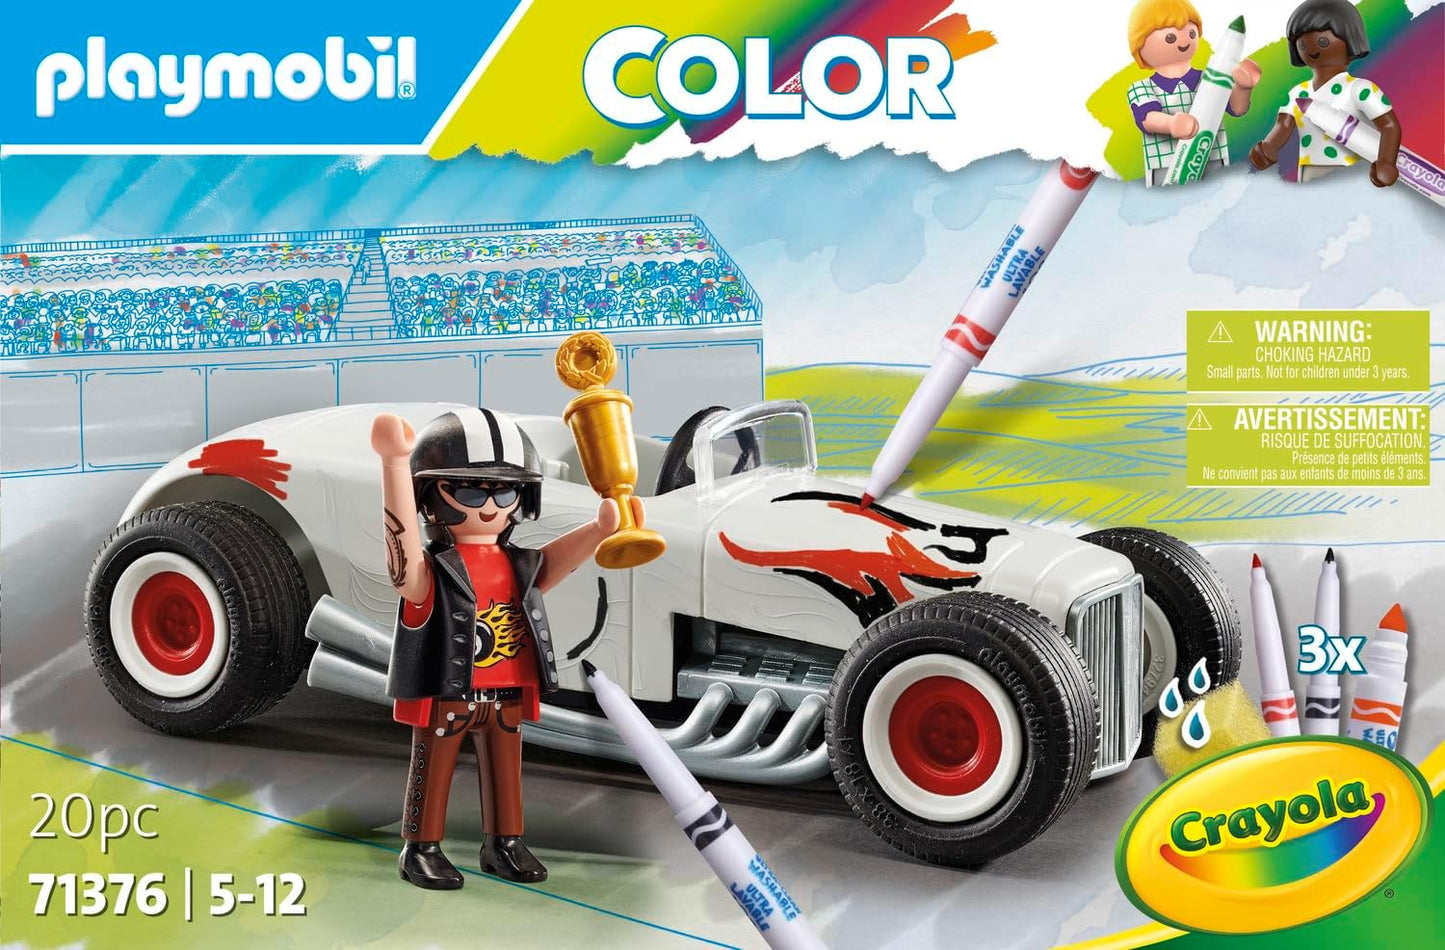 Playmobil  71376 Color Hot Rod, diversão criativa para fãs de carros, com marcadores solúveis em água e vários acessórios, dramatização divertida e imaginativa, conjuntos de jogos artísticos adequados para crianças de 5 anos ou mais